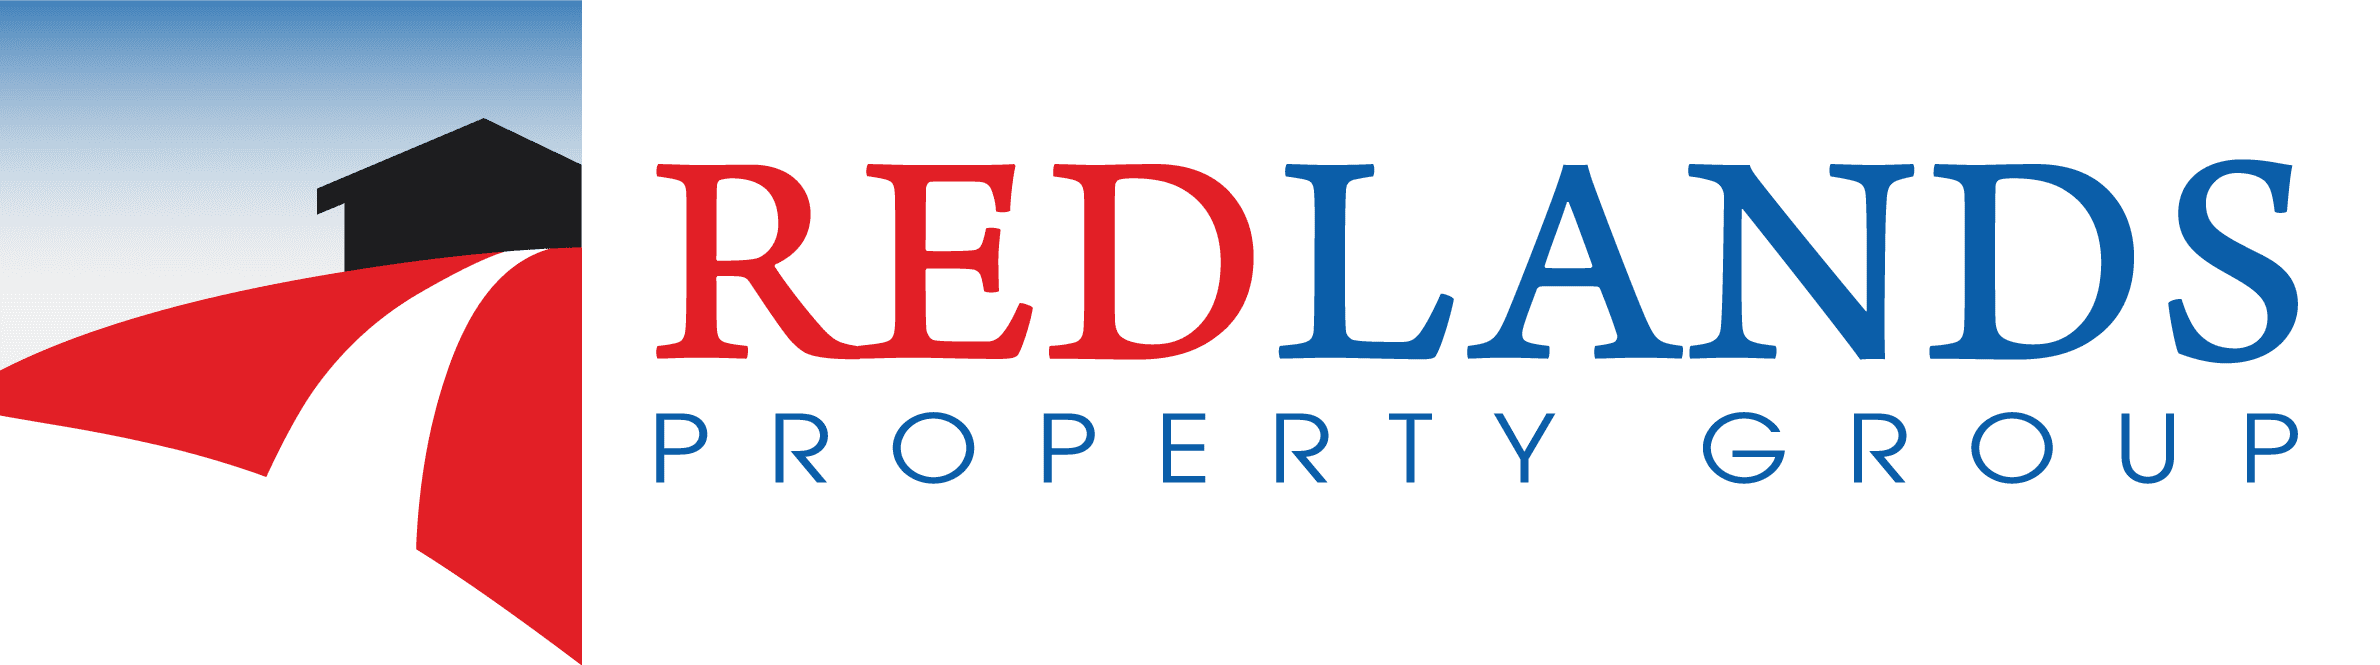 Redland Bay Real Estate